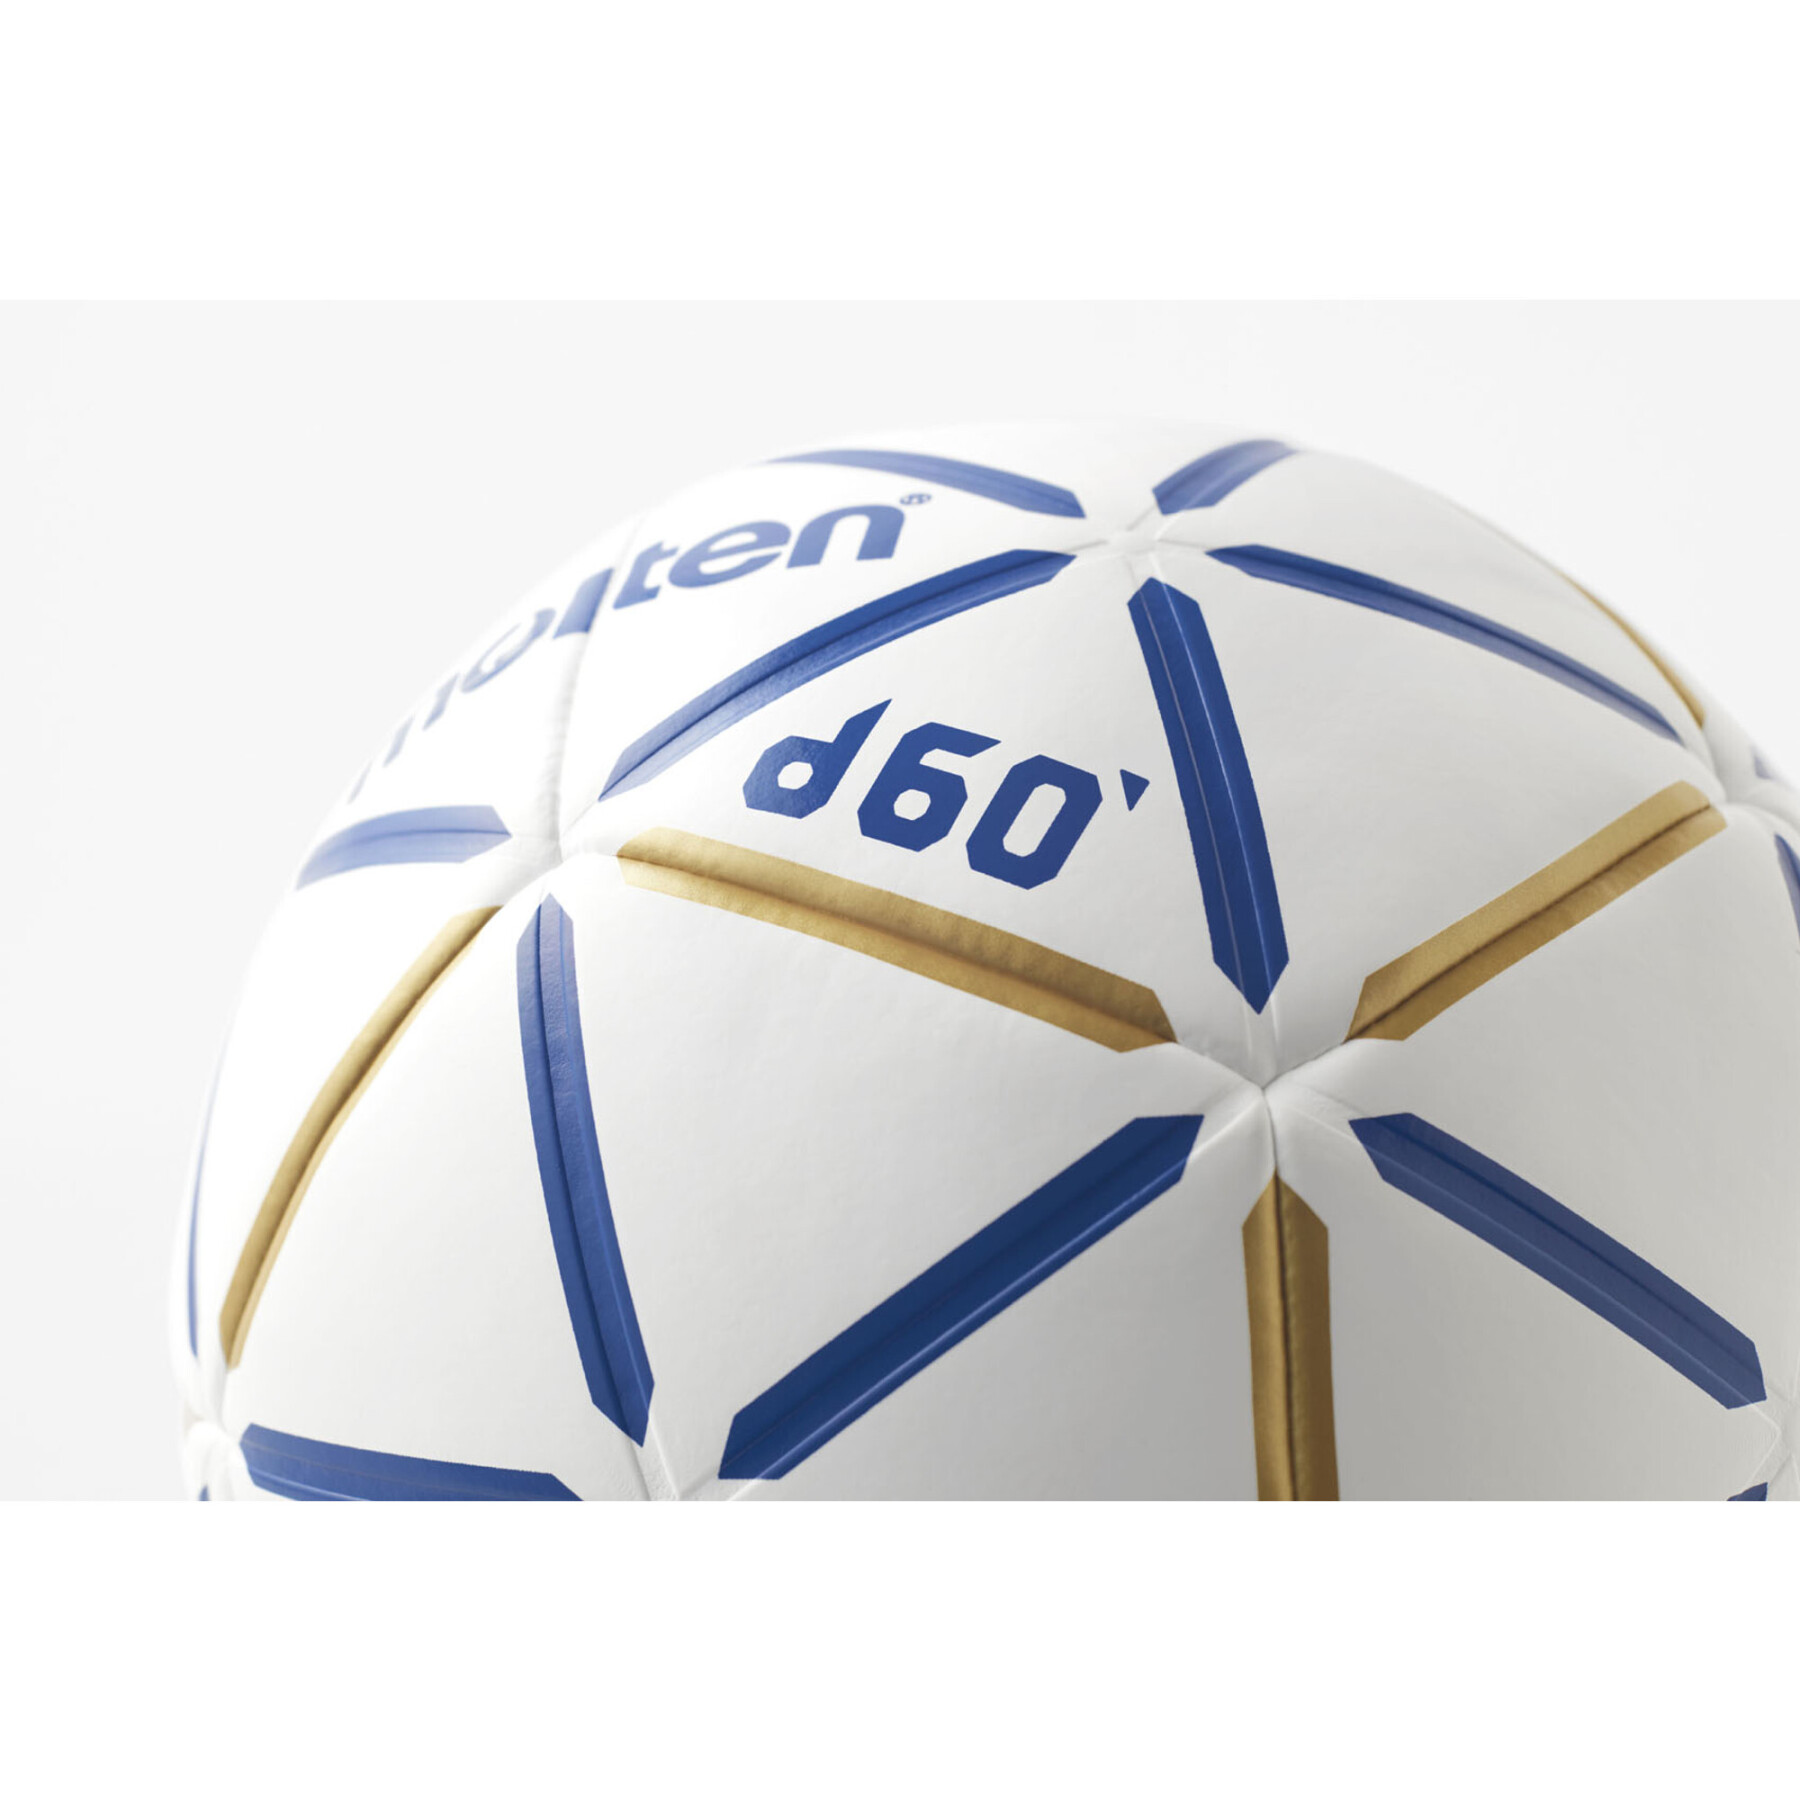 Pallone da Pallamano Molten D60